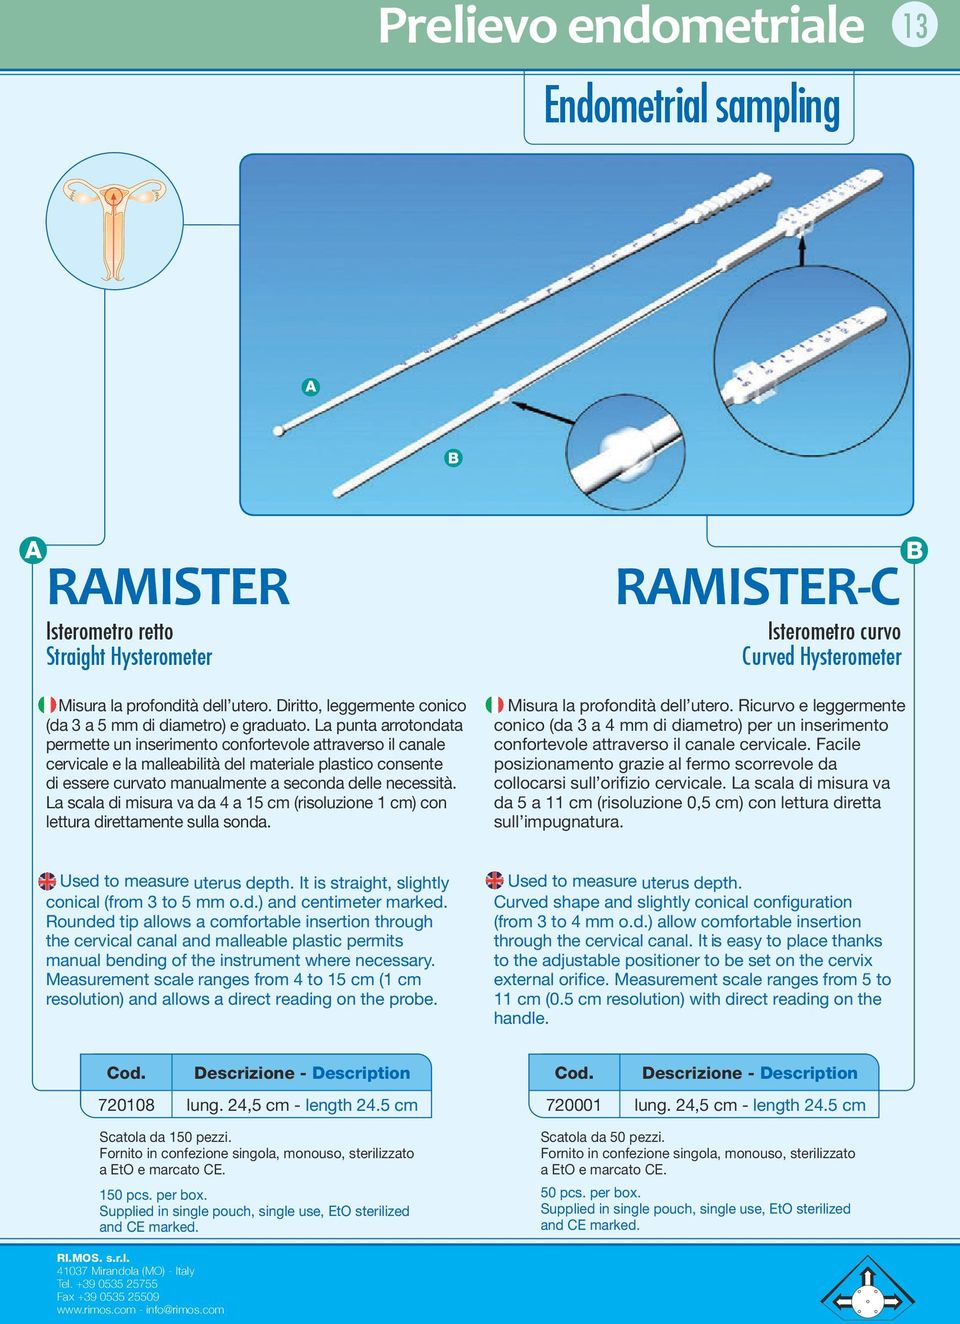 La scala di misura va da 4 a 15 cm (risoluzione 1 cm) con lettura direttamente sulla sonda. RAMISTER-C Isterometro curvo Curved Hysterometer Misura la profondità dell utero.